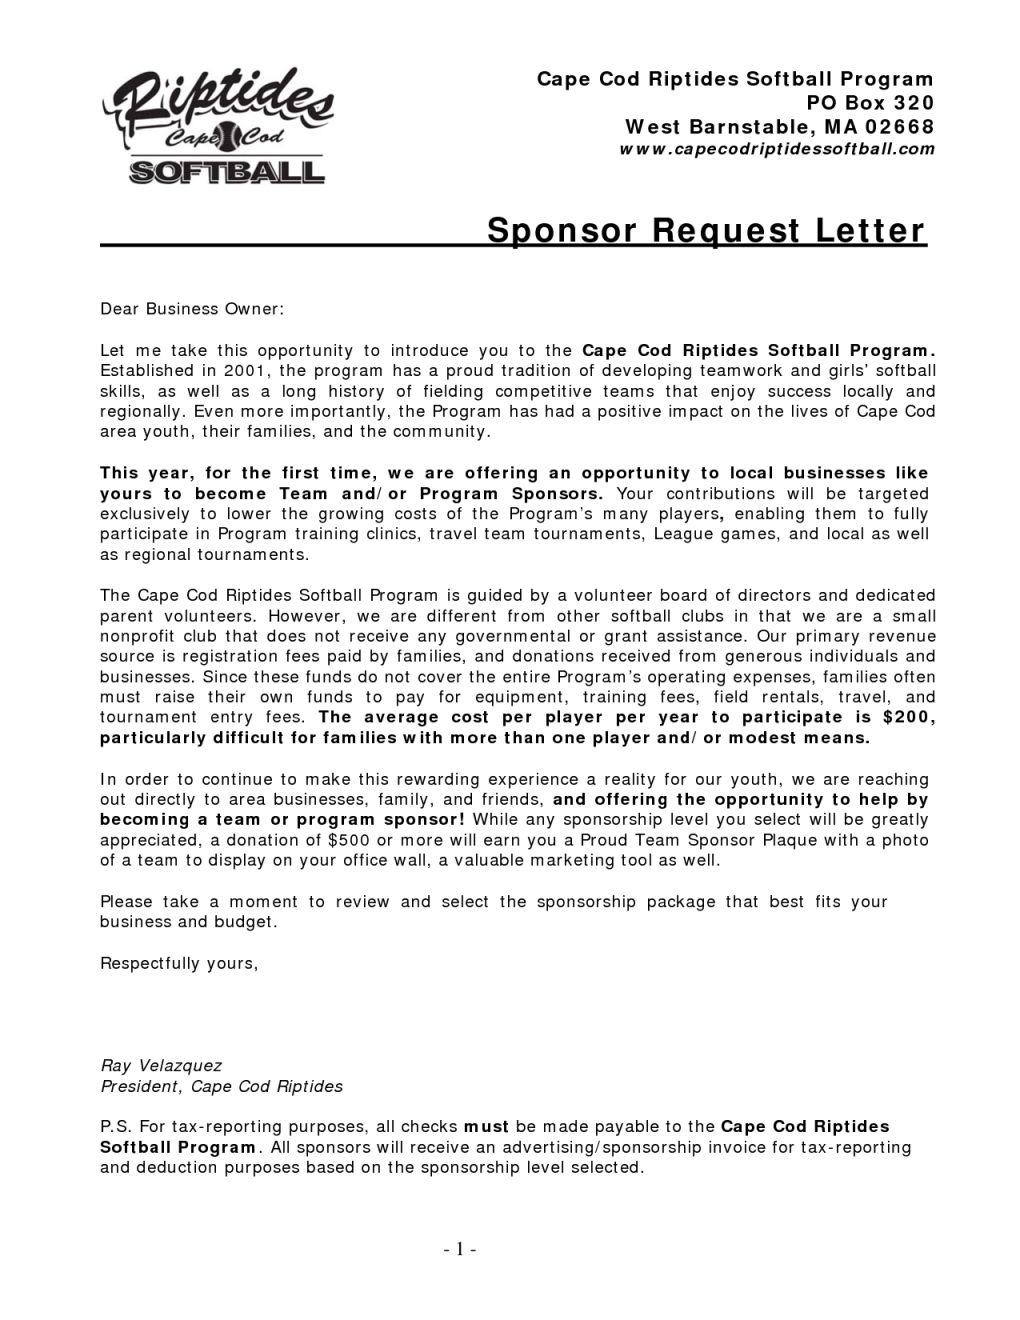 Baseball Sponsorship Letter Template - Well Liked Sample Sponsor Letter Yy55 – Documentaries for Change